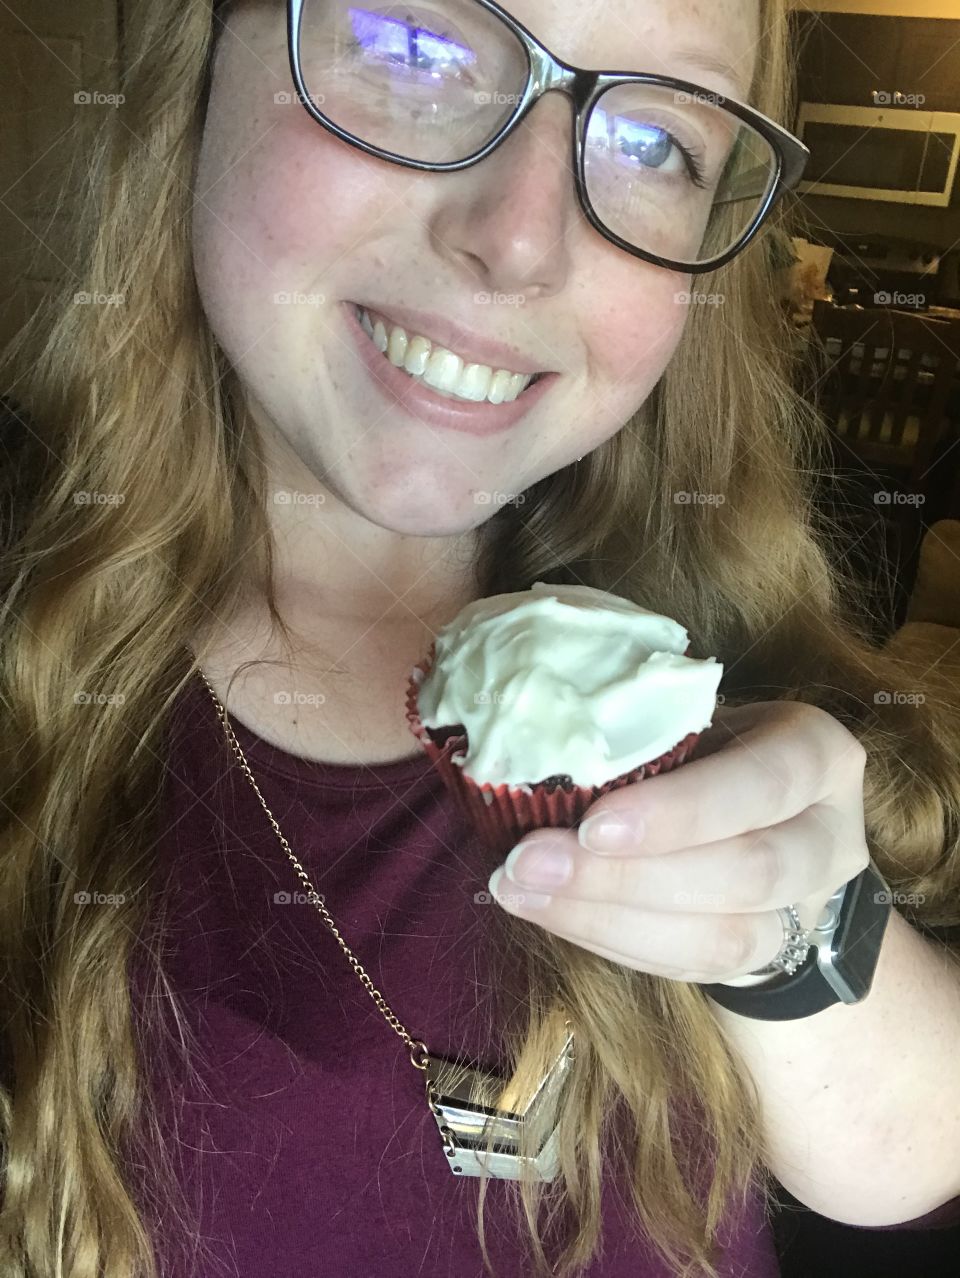 Selfie girl pretty teeth hair nice cute fun woman white glasses cupcakes 